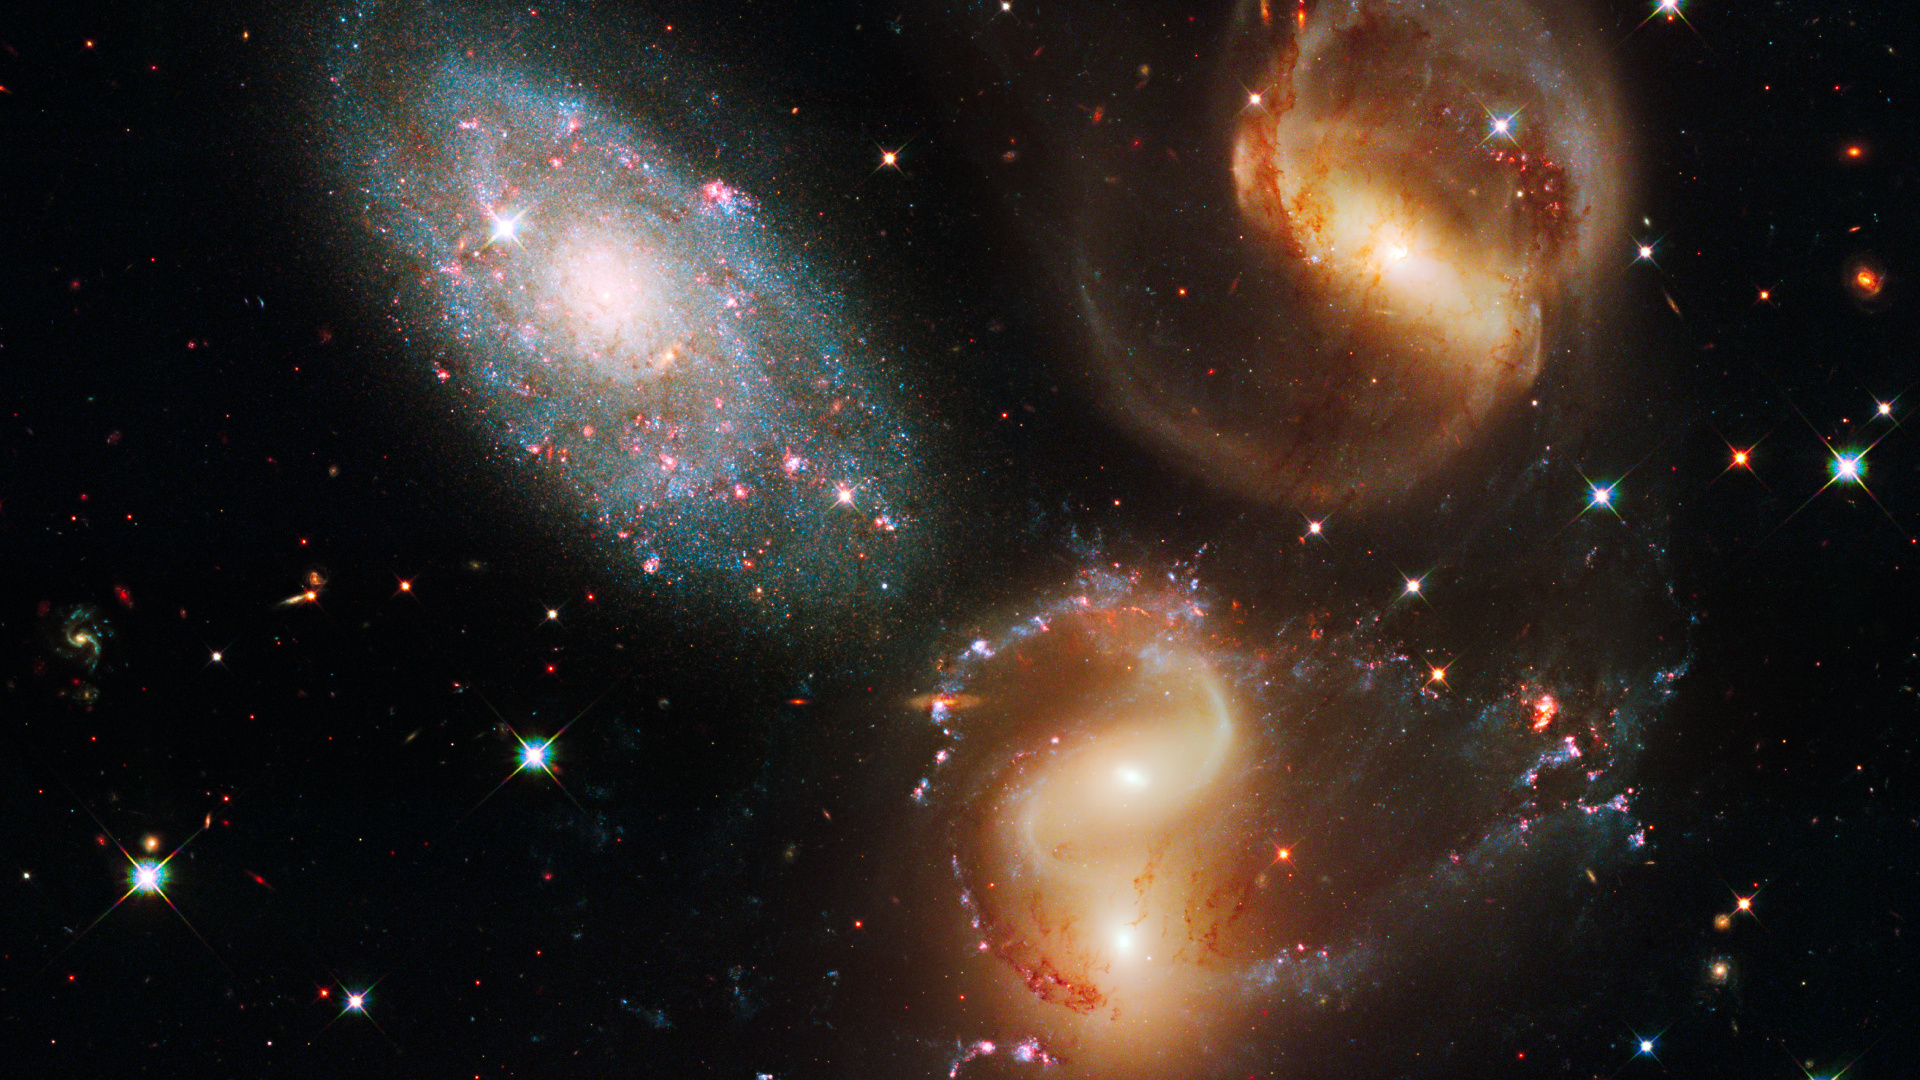 哈勃太空望远镜, 天文学, 外层空间, 天文学对象, 宇宙 壁纸 1920x1080 允许